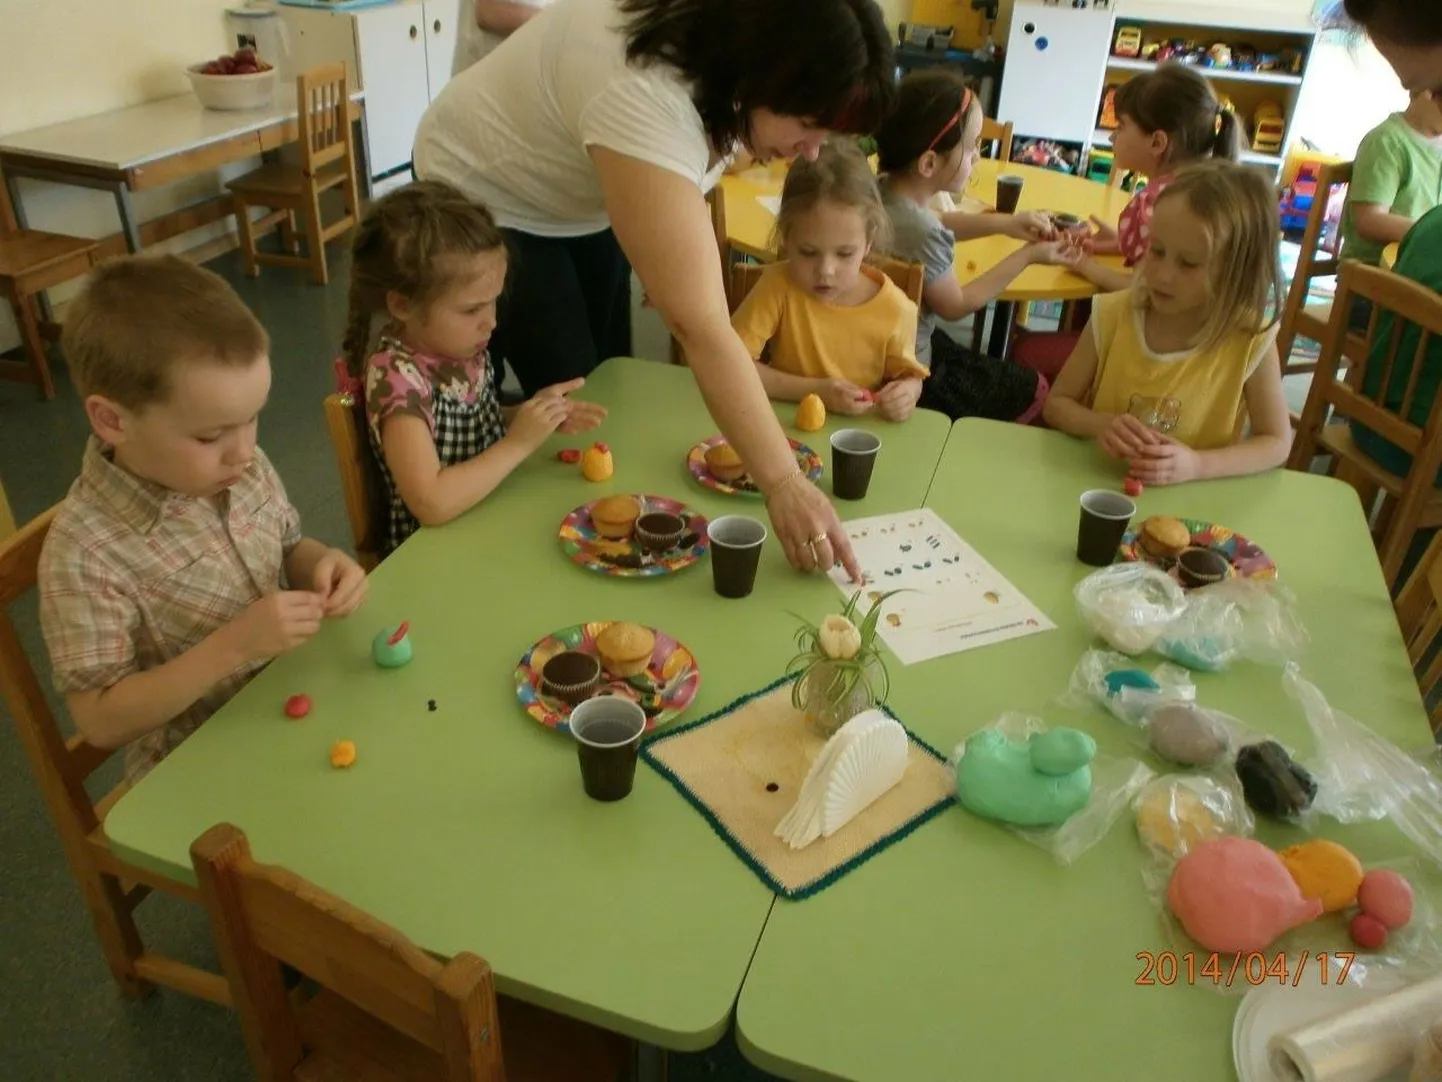 В кивиылиском детском саду «Каннике» детей знакомили с профессией пекаря.